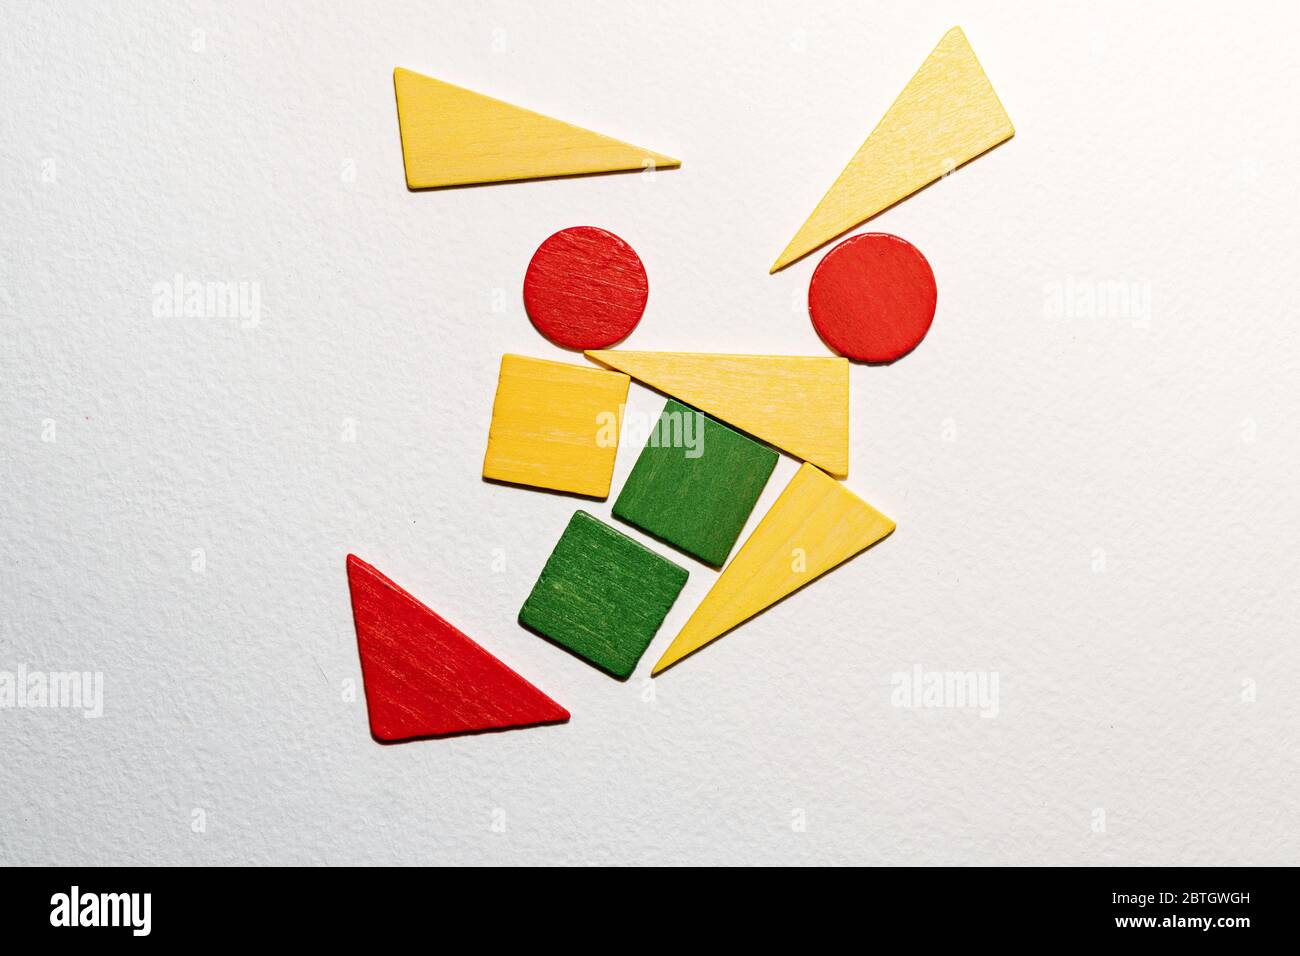 Diferentes formas coloridas de madera sobre fondo blanco. Formas geométricas rojo, verde, amarillo, vista superior. Concepto de geometría. Espacio de copia. Tarea lógica educativa para los niños. Disposición plana. Foto de stock